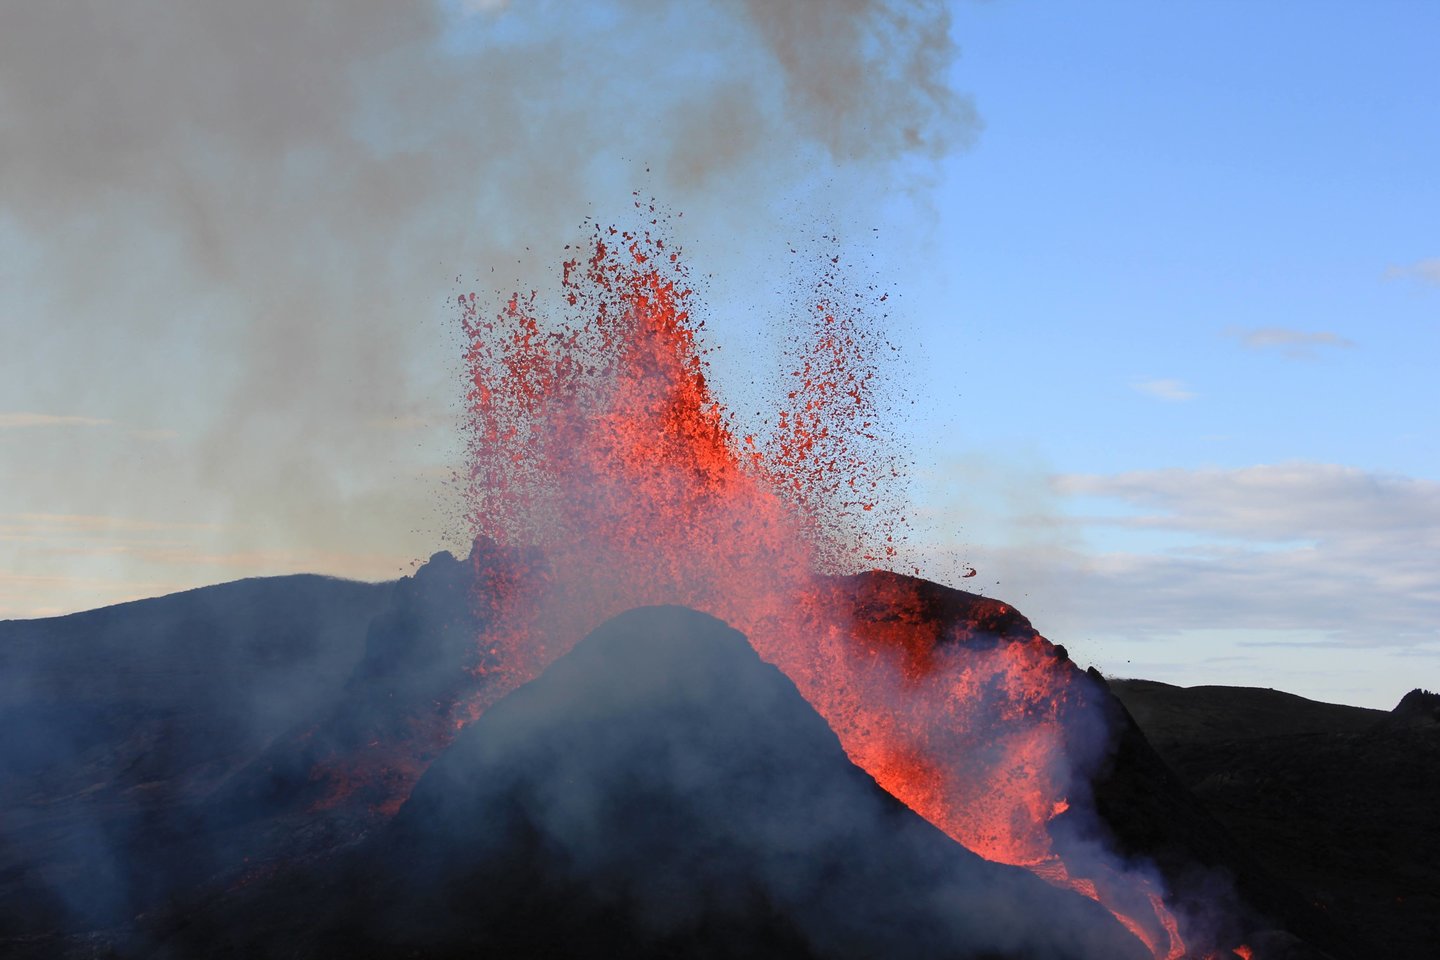 Ugnikalnį Donatas stebėjo ir pirmosiomis išsiveržimo dienomis. <br>D.Arlausko nuotr.